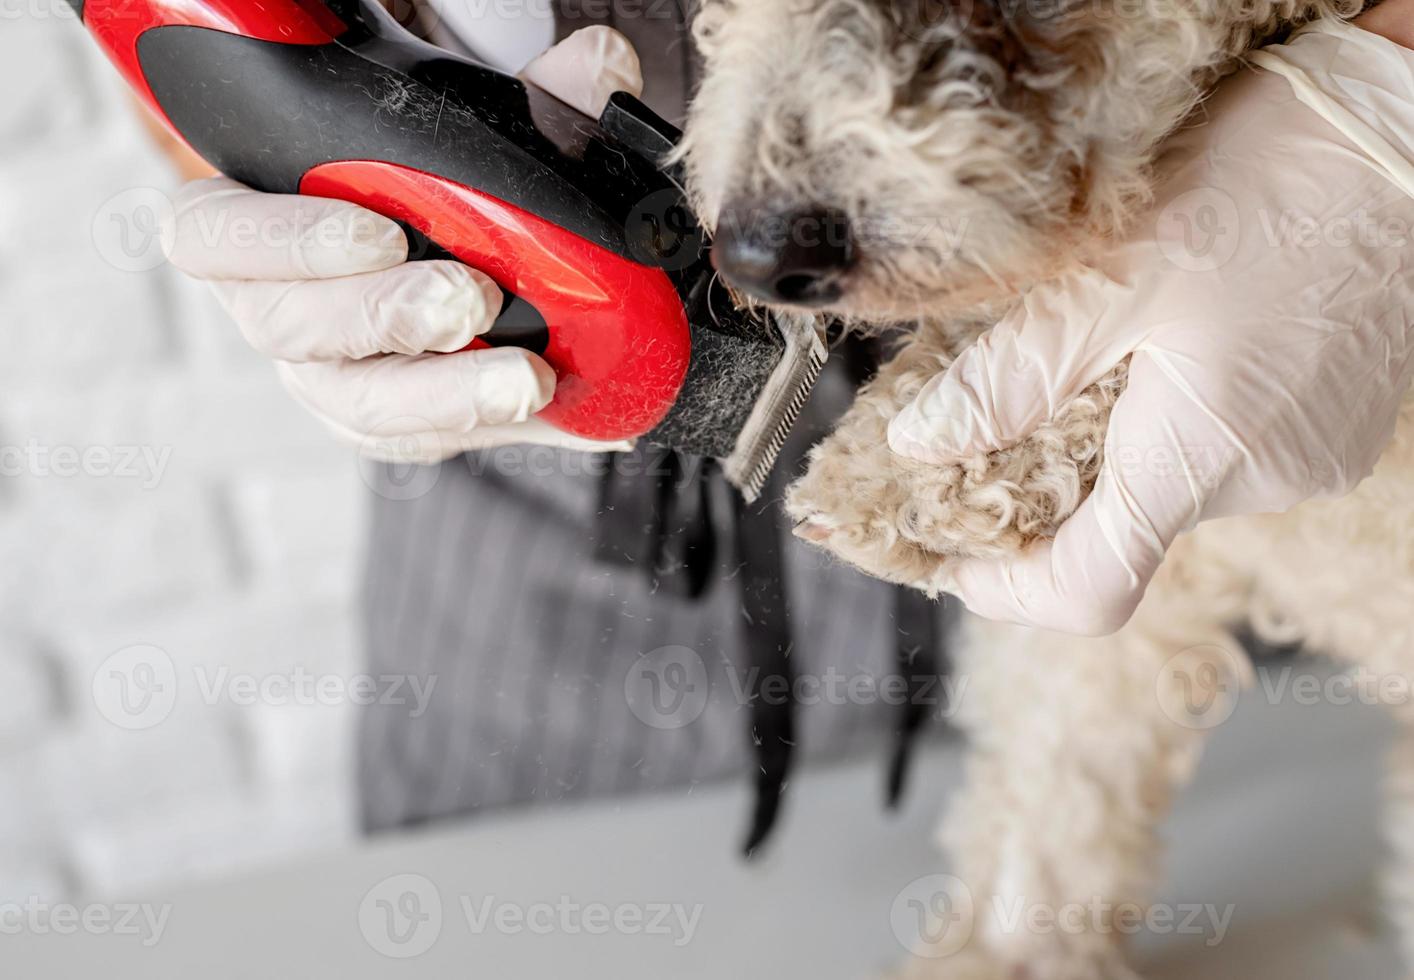 cachorro bichon frise cansado sendo tratado pela mulher com as mãos nas luvas em casa foto